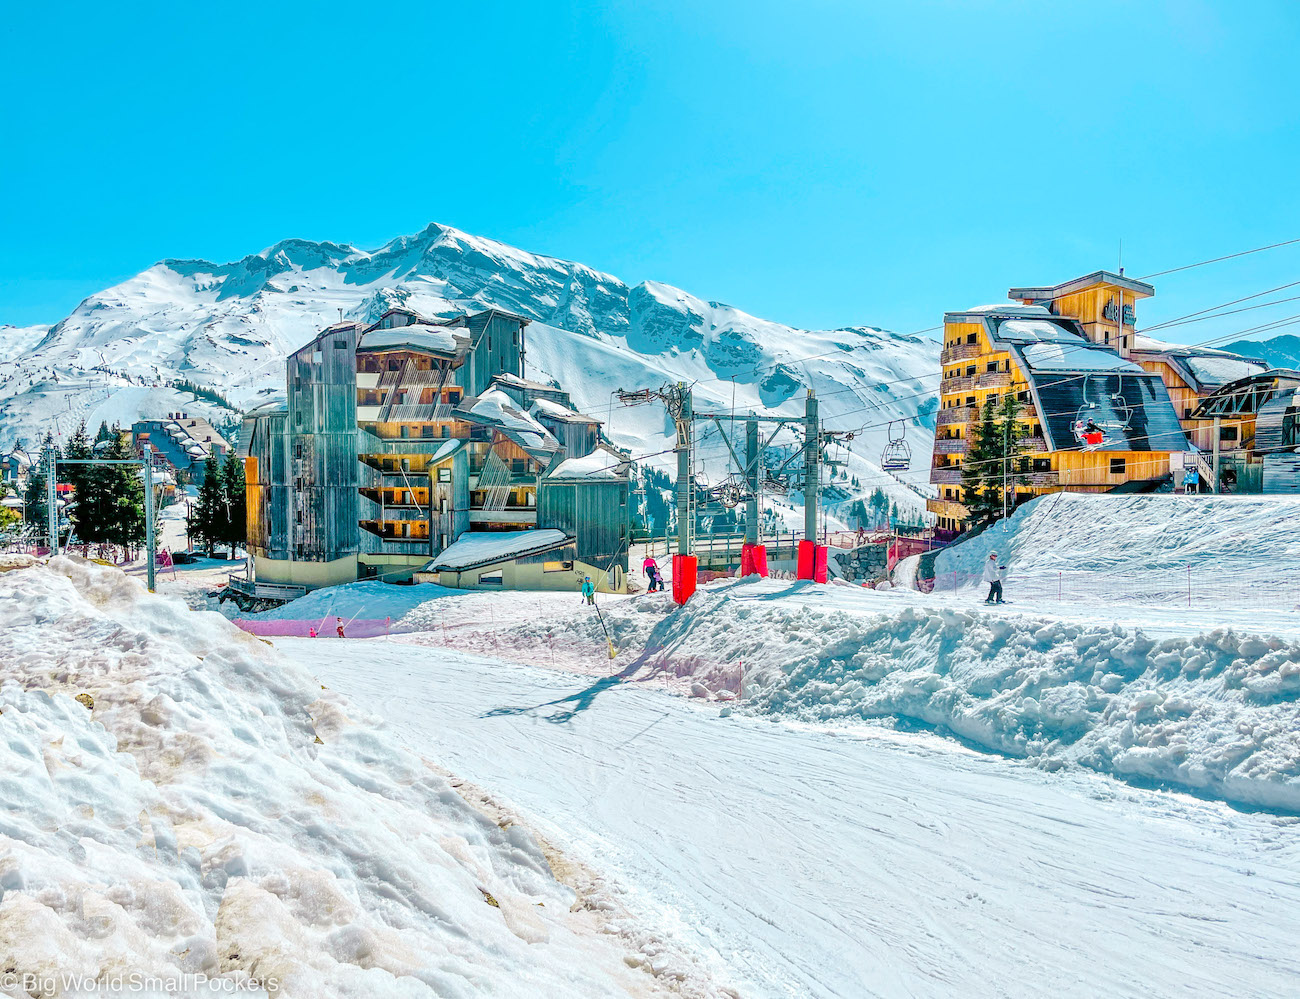 France, Alps, Ski Resort